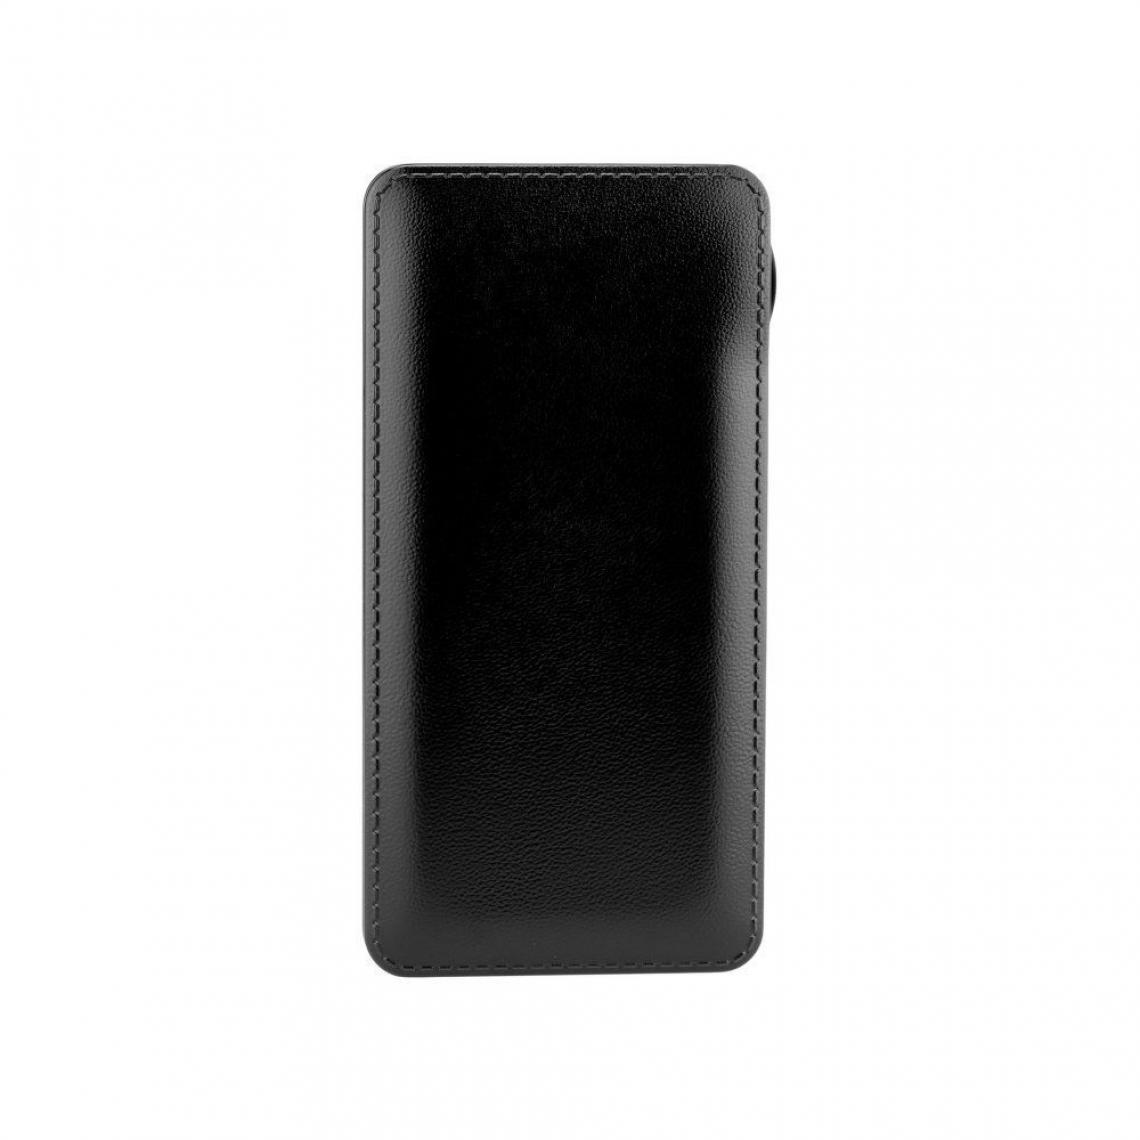 Ozzzo - Chargeur batterie externe 20000 mAh powerbank ozzzo noir pour Samsung Galaxy A20e - Autres accessoires smartphone